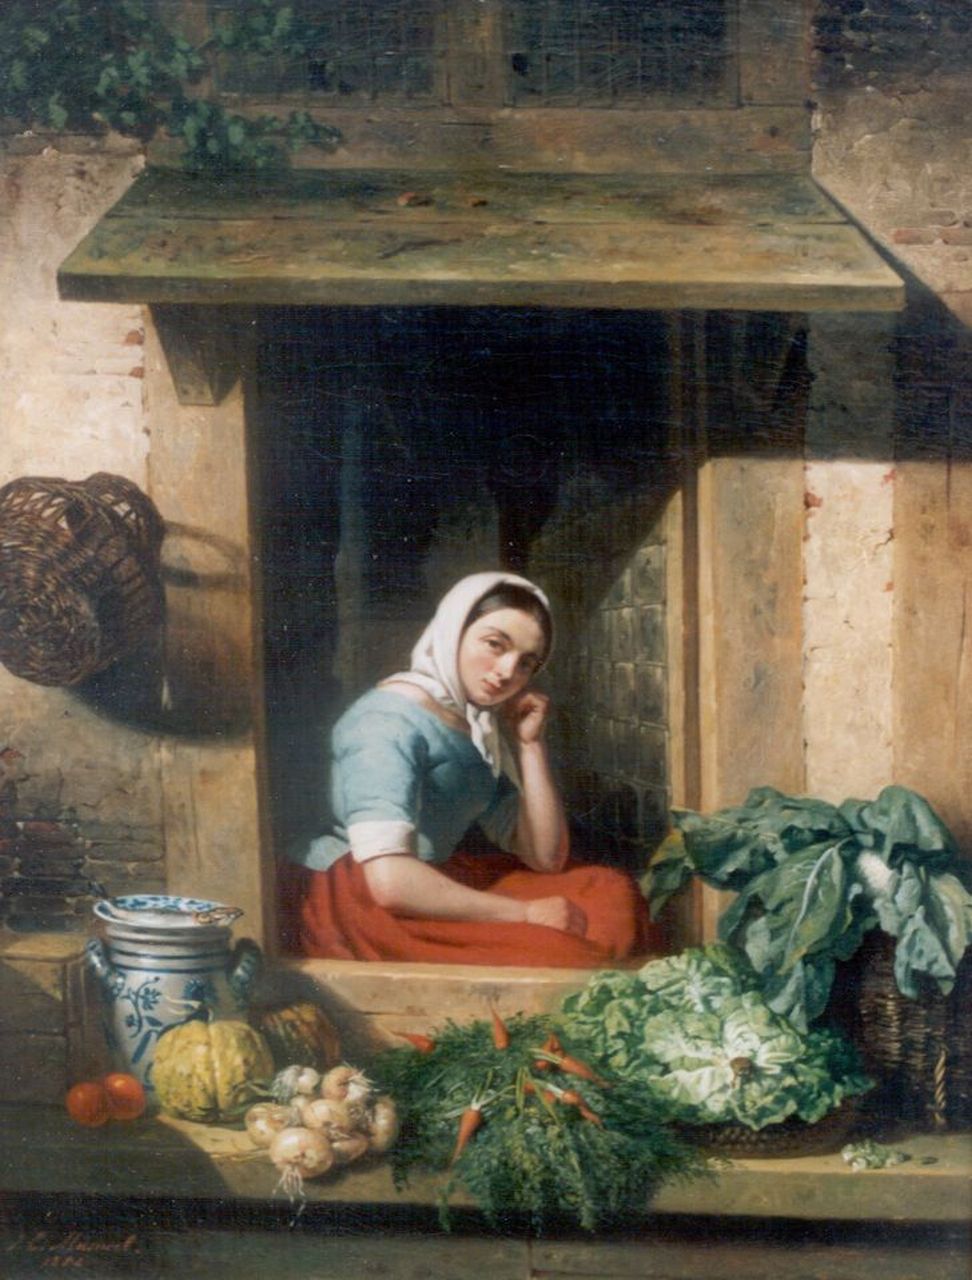 Masurel J.E.  | Johannes Engel Masurel, De groentevrouw, olieverf op doek 53,0 x 40,8 cm, gesigneerd linksonder en gedateerd 1852